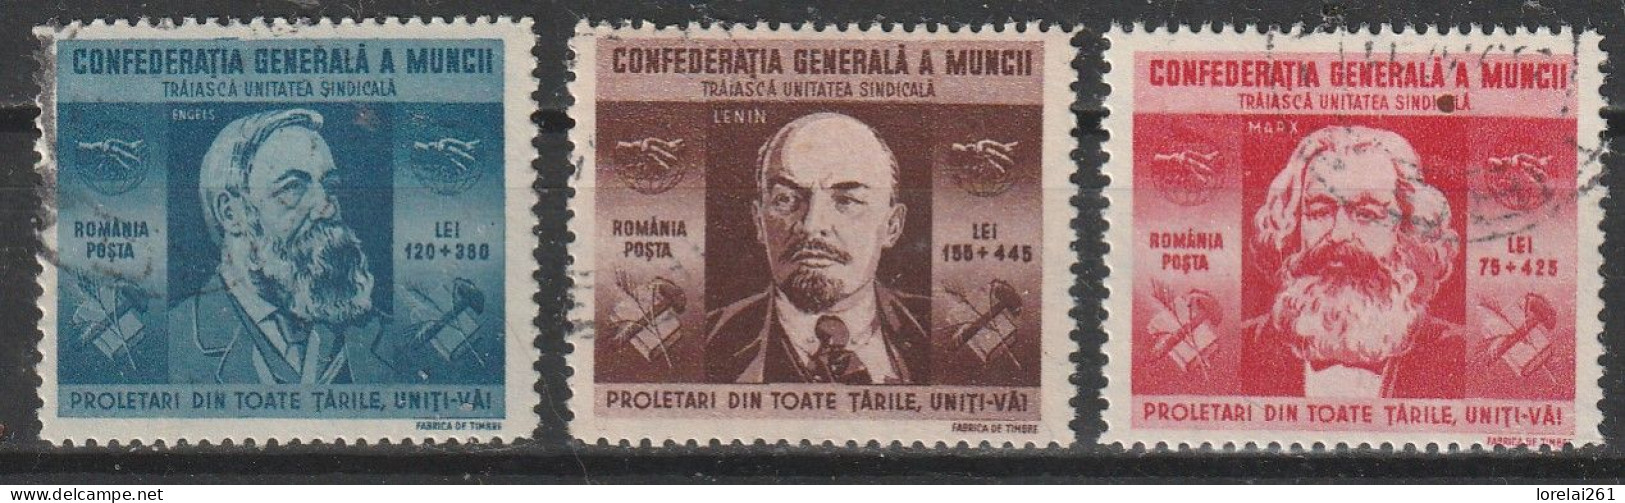 1945 - Confédération Générale Du Travail Mi No 861/863 - Gebraucht